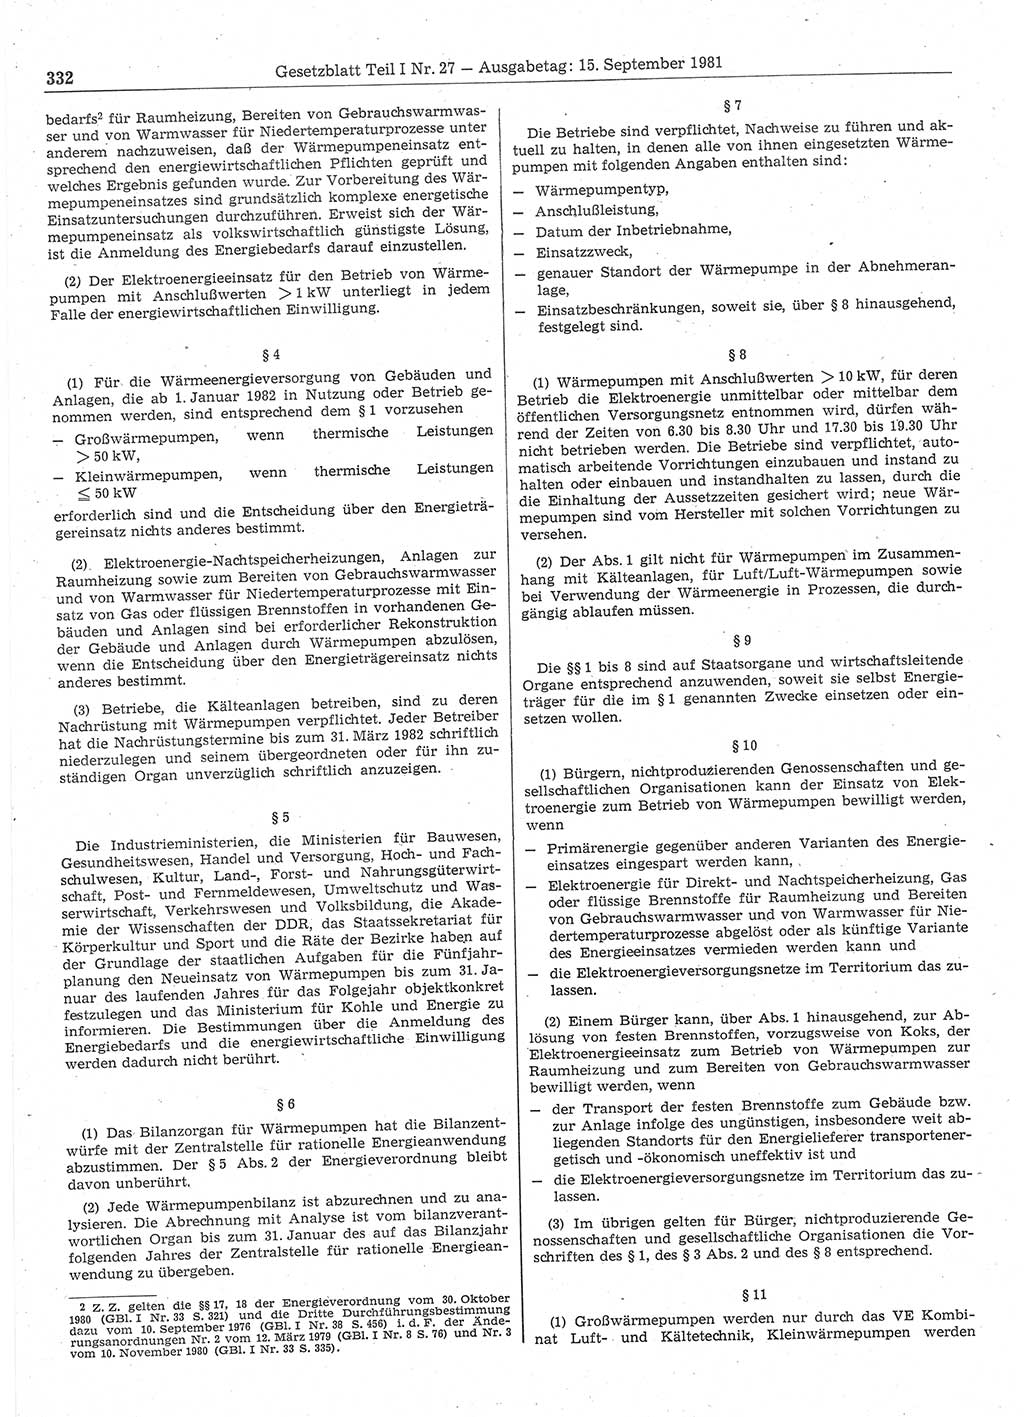 Gesetzblatt (GBl.) der Deutschen Demokratischen Republik (DDR) Teil Ⅰ 1981, Seite 332 (GBl. DDR Ⅰ 1981, S. 332)